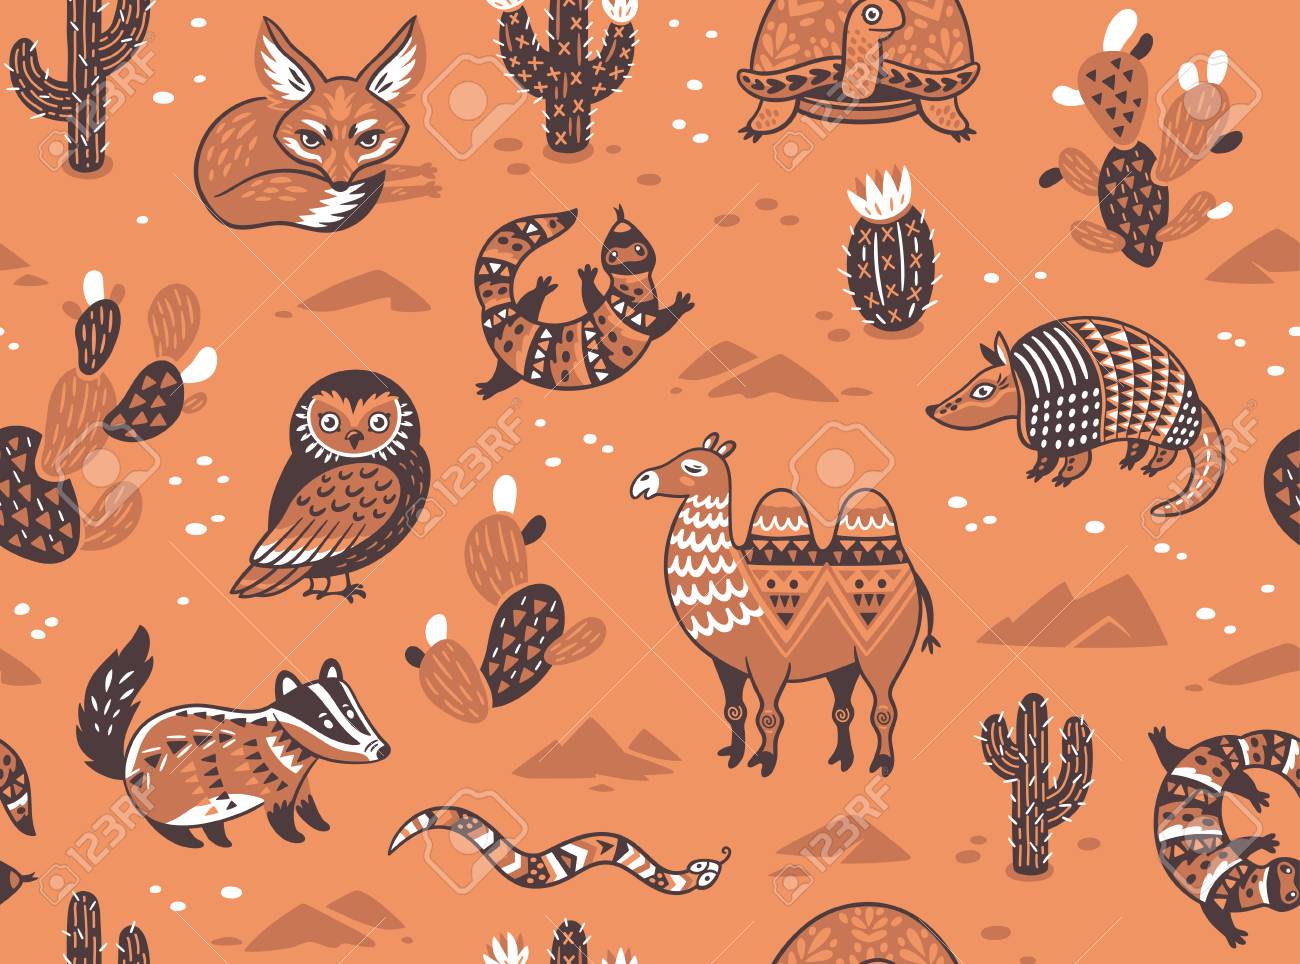 Desert Animal Drawing - Coyotes - DESERT ANIMAL ART